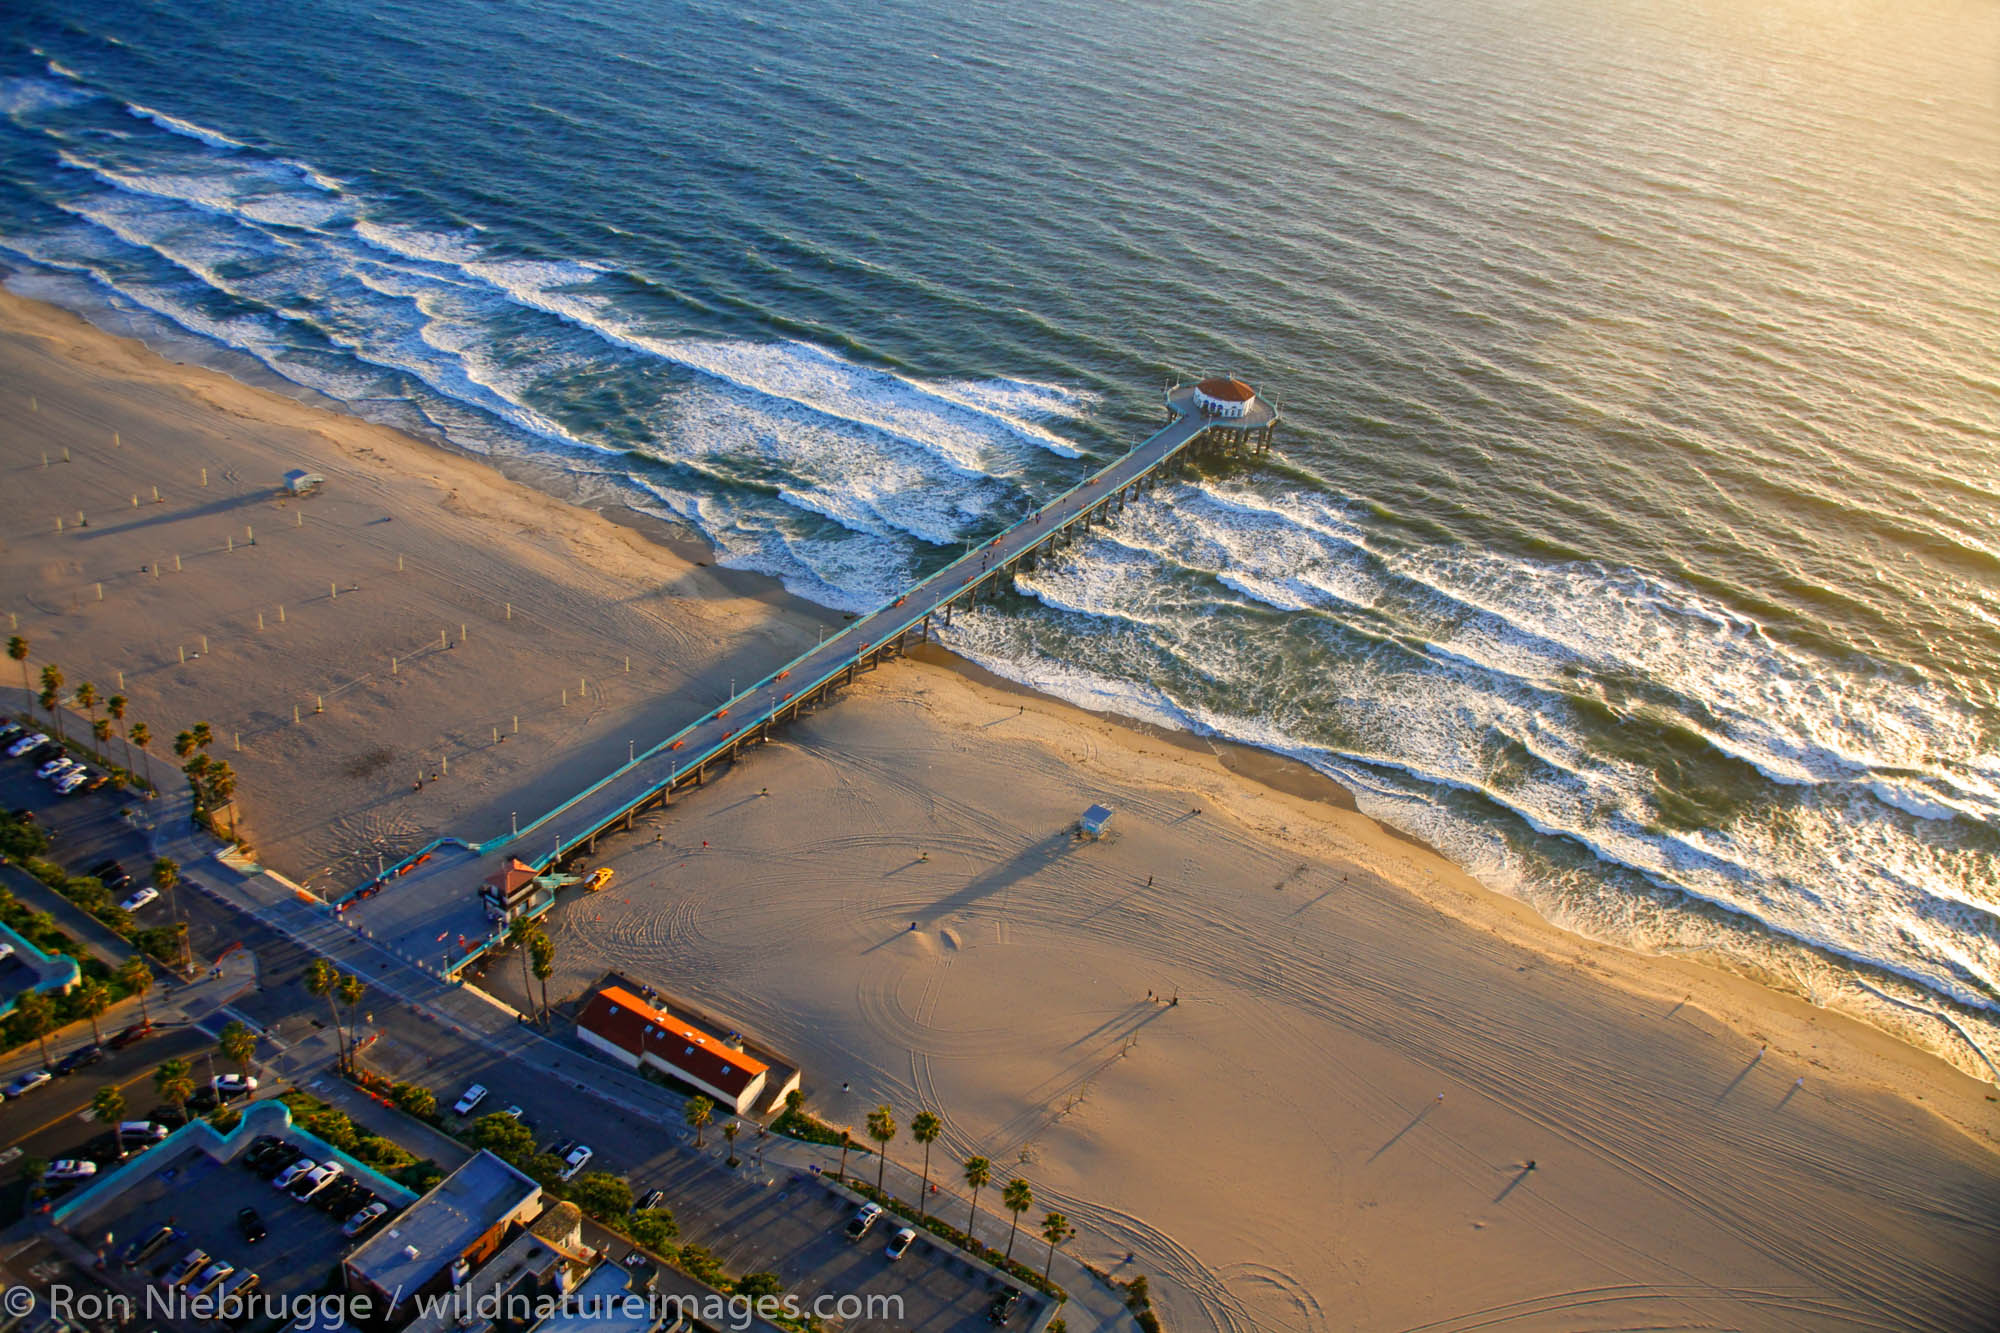 Aerial view of Manhattan Beach and the Manhattan Beach Pier, near Los Angeles, California.